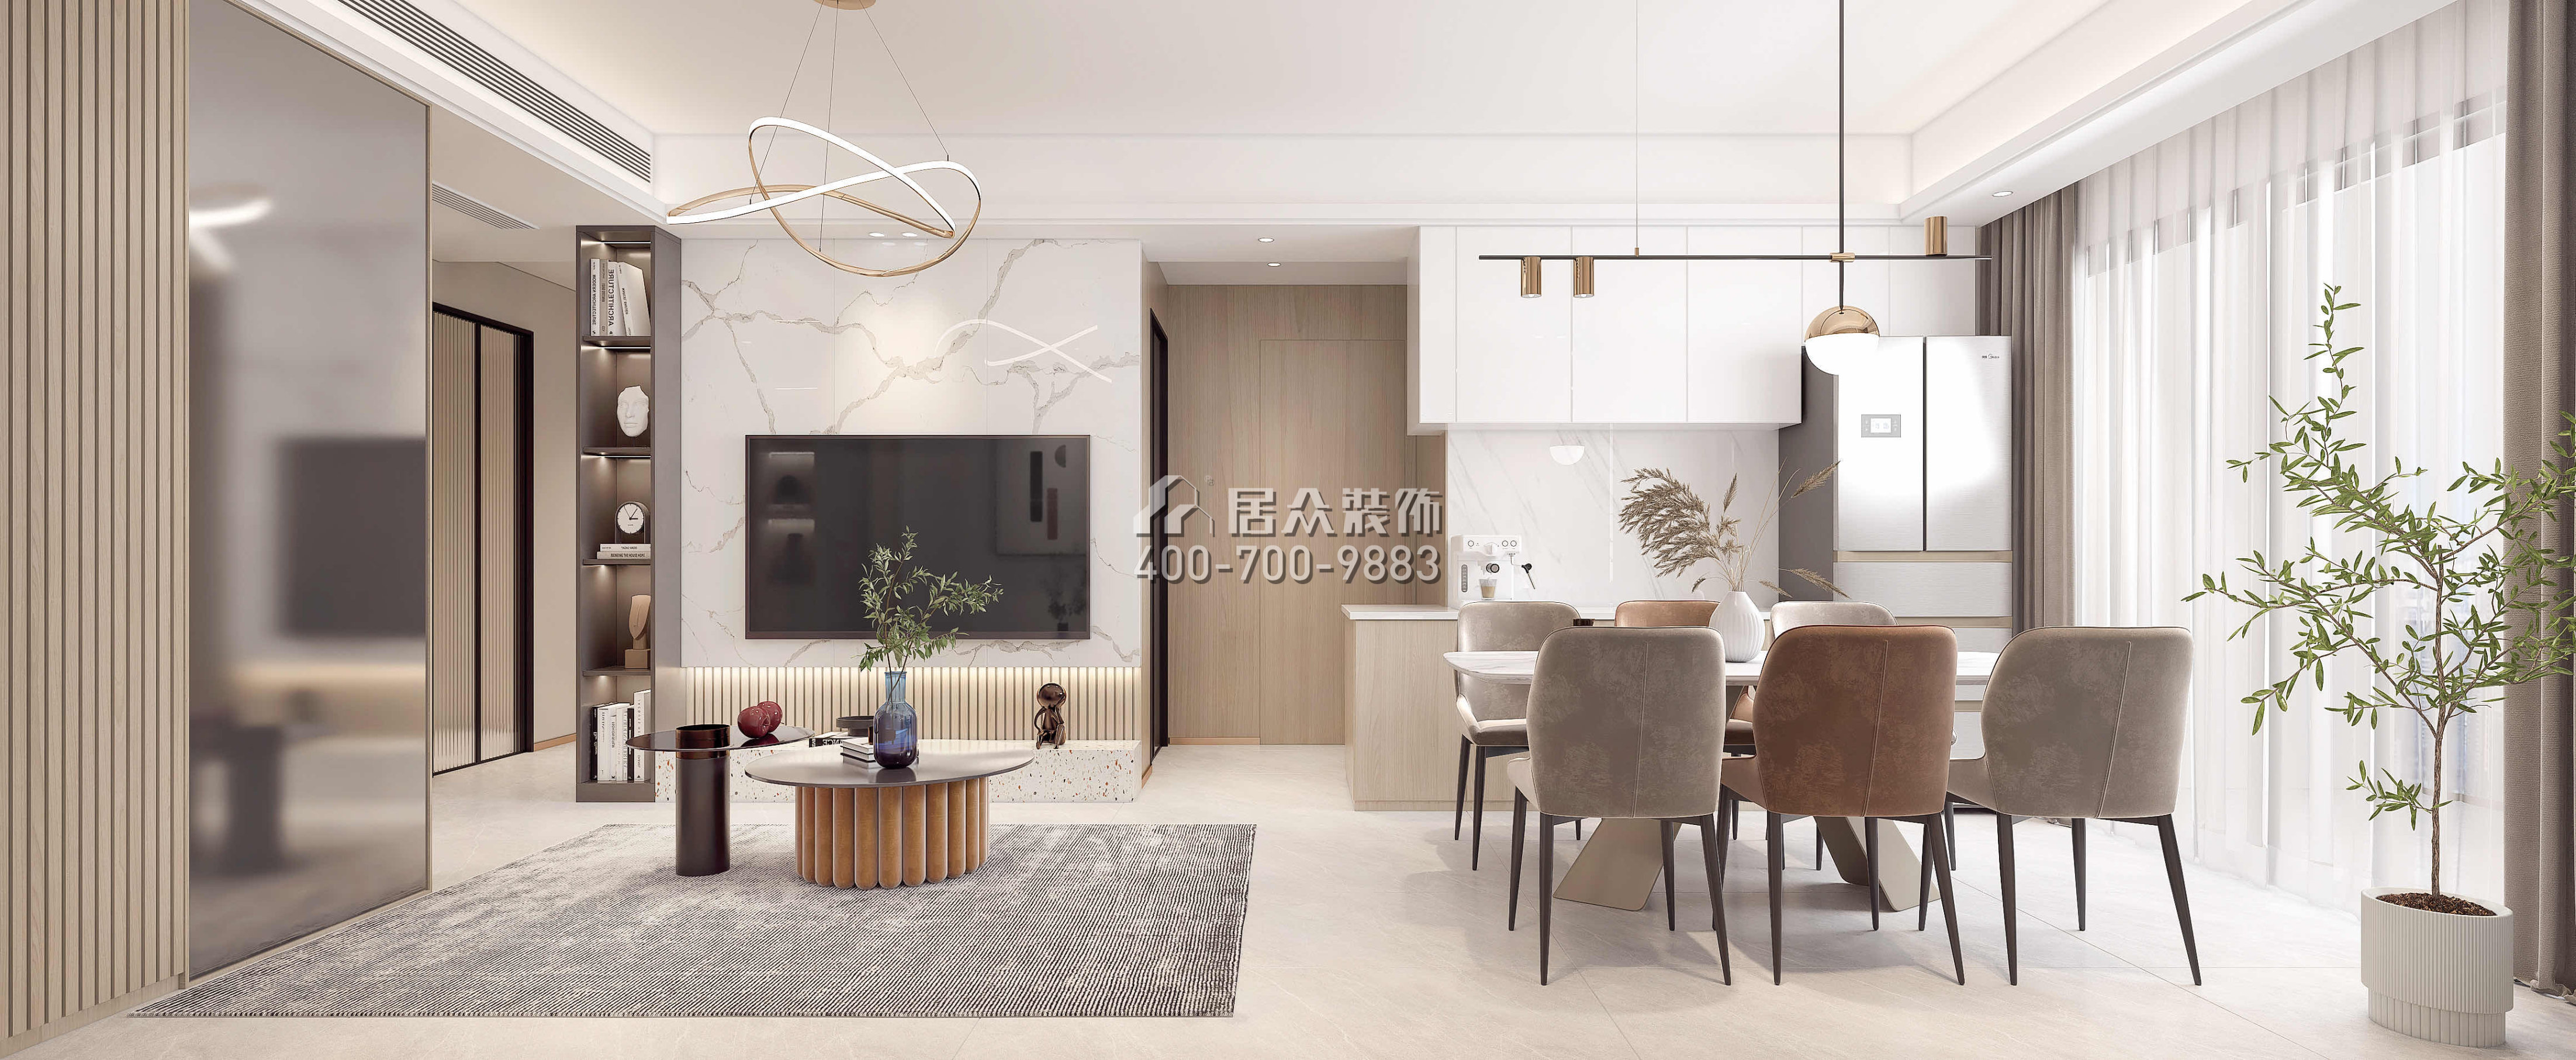 中洲濱海華府79平方米現代簡約風格平層戶型客廳裝修效果圖